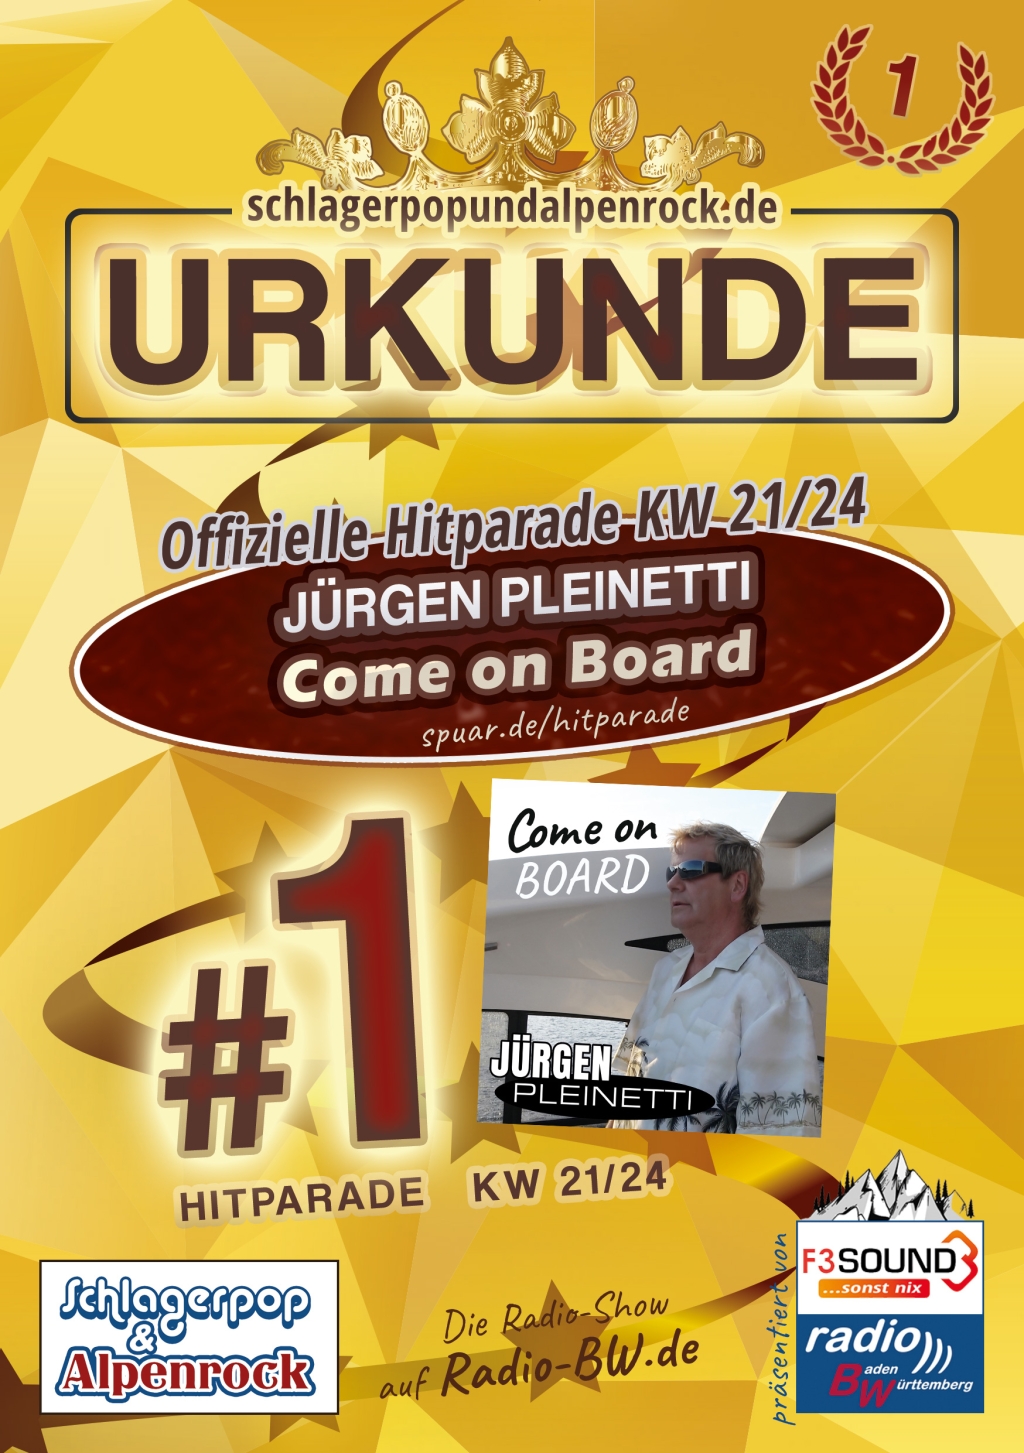 URKUNDE - Offizielle Hitparade KW 21/24